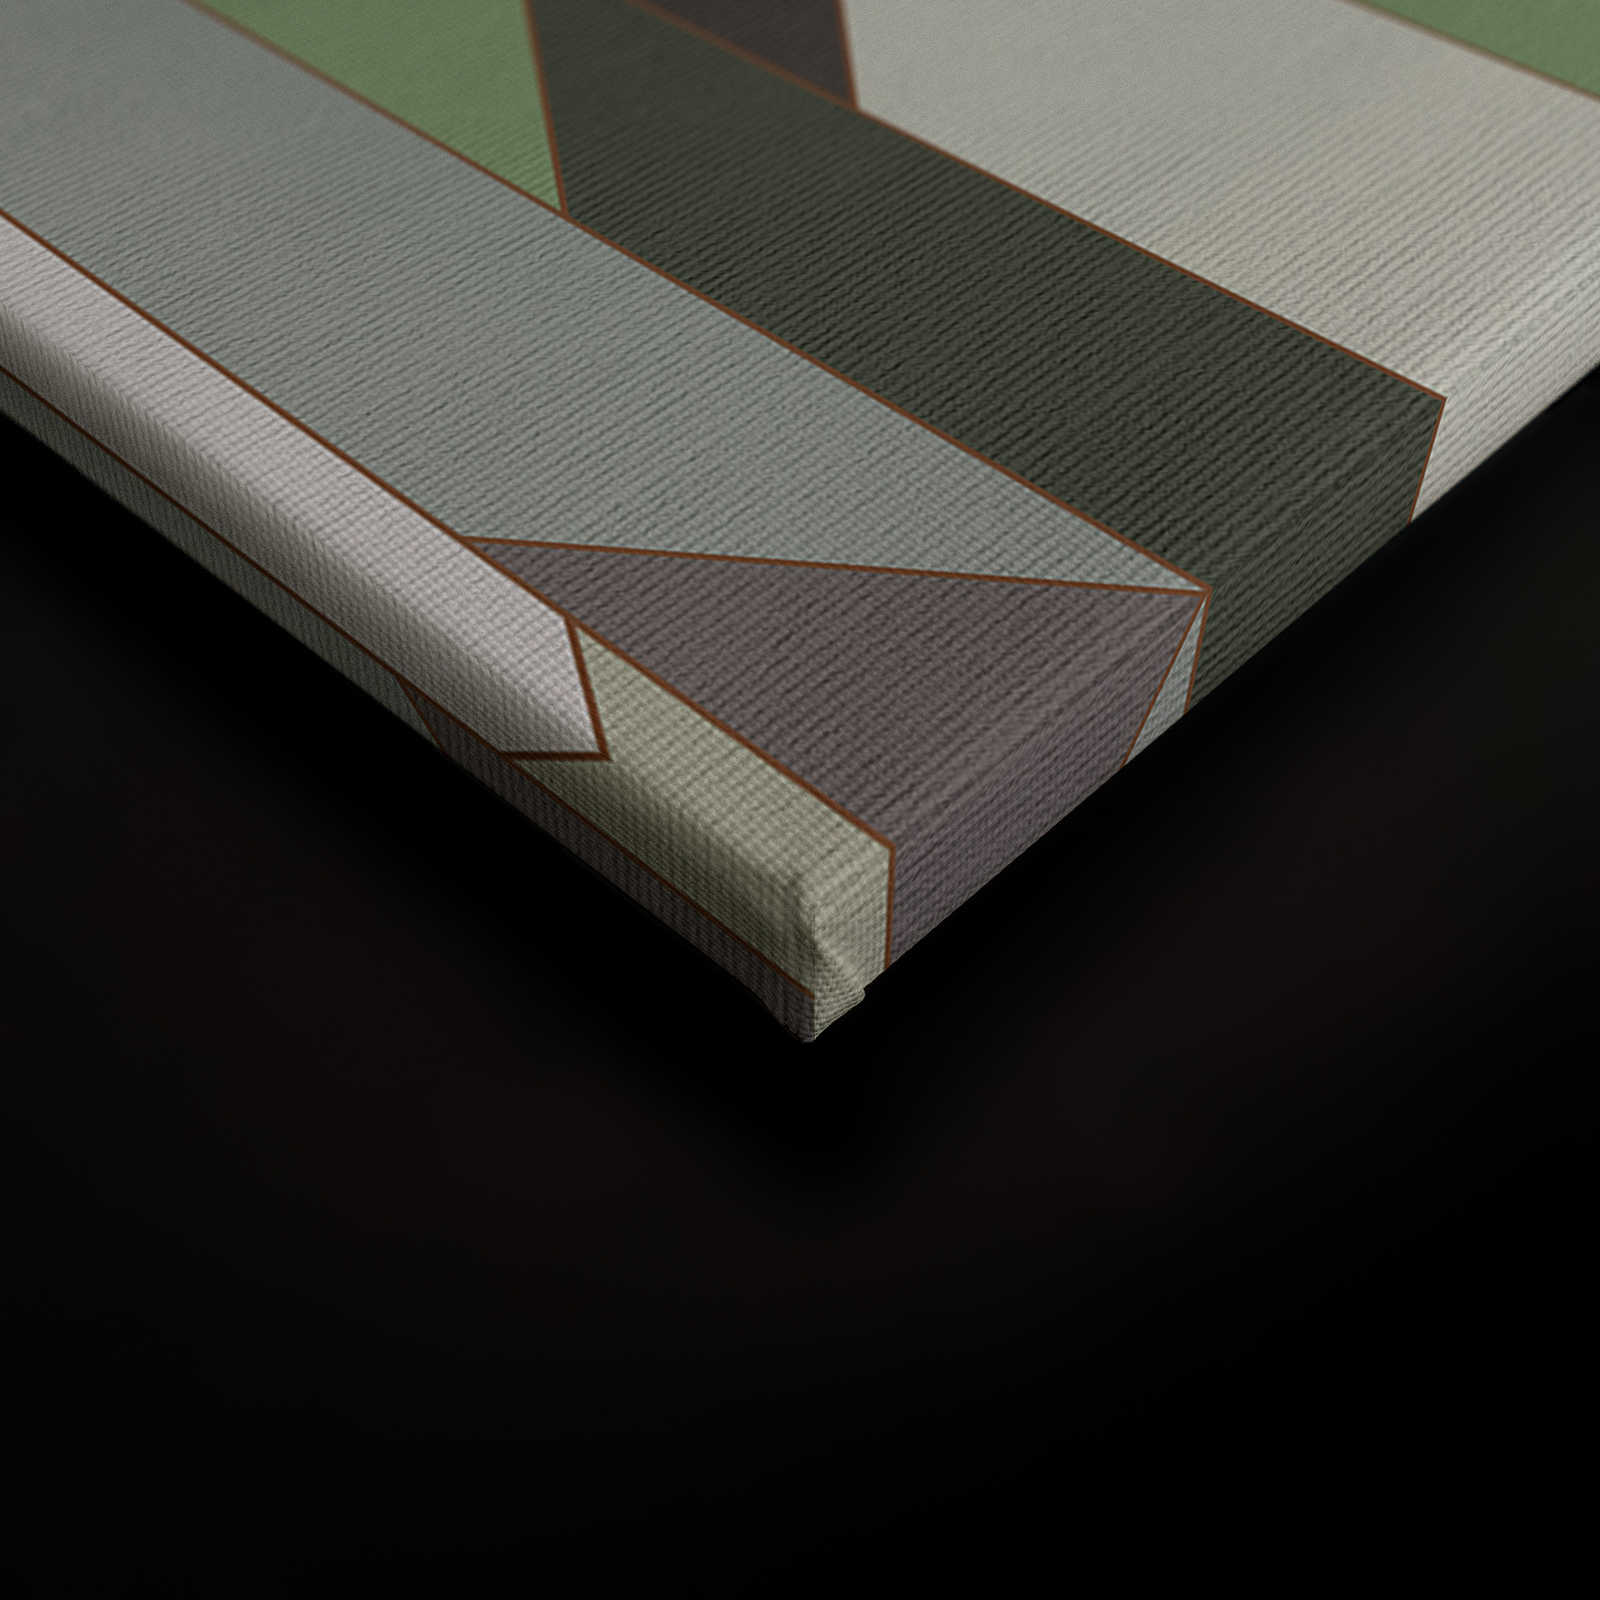             Fold 1 - Toile à rayures de style rétro - 1,20 m x 0,80 m
        